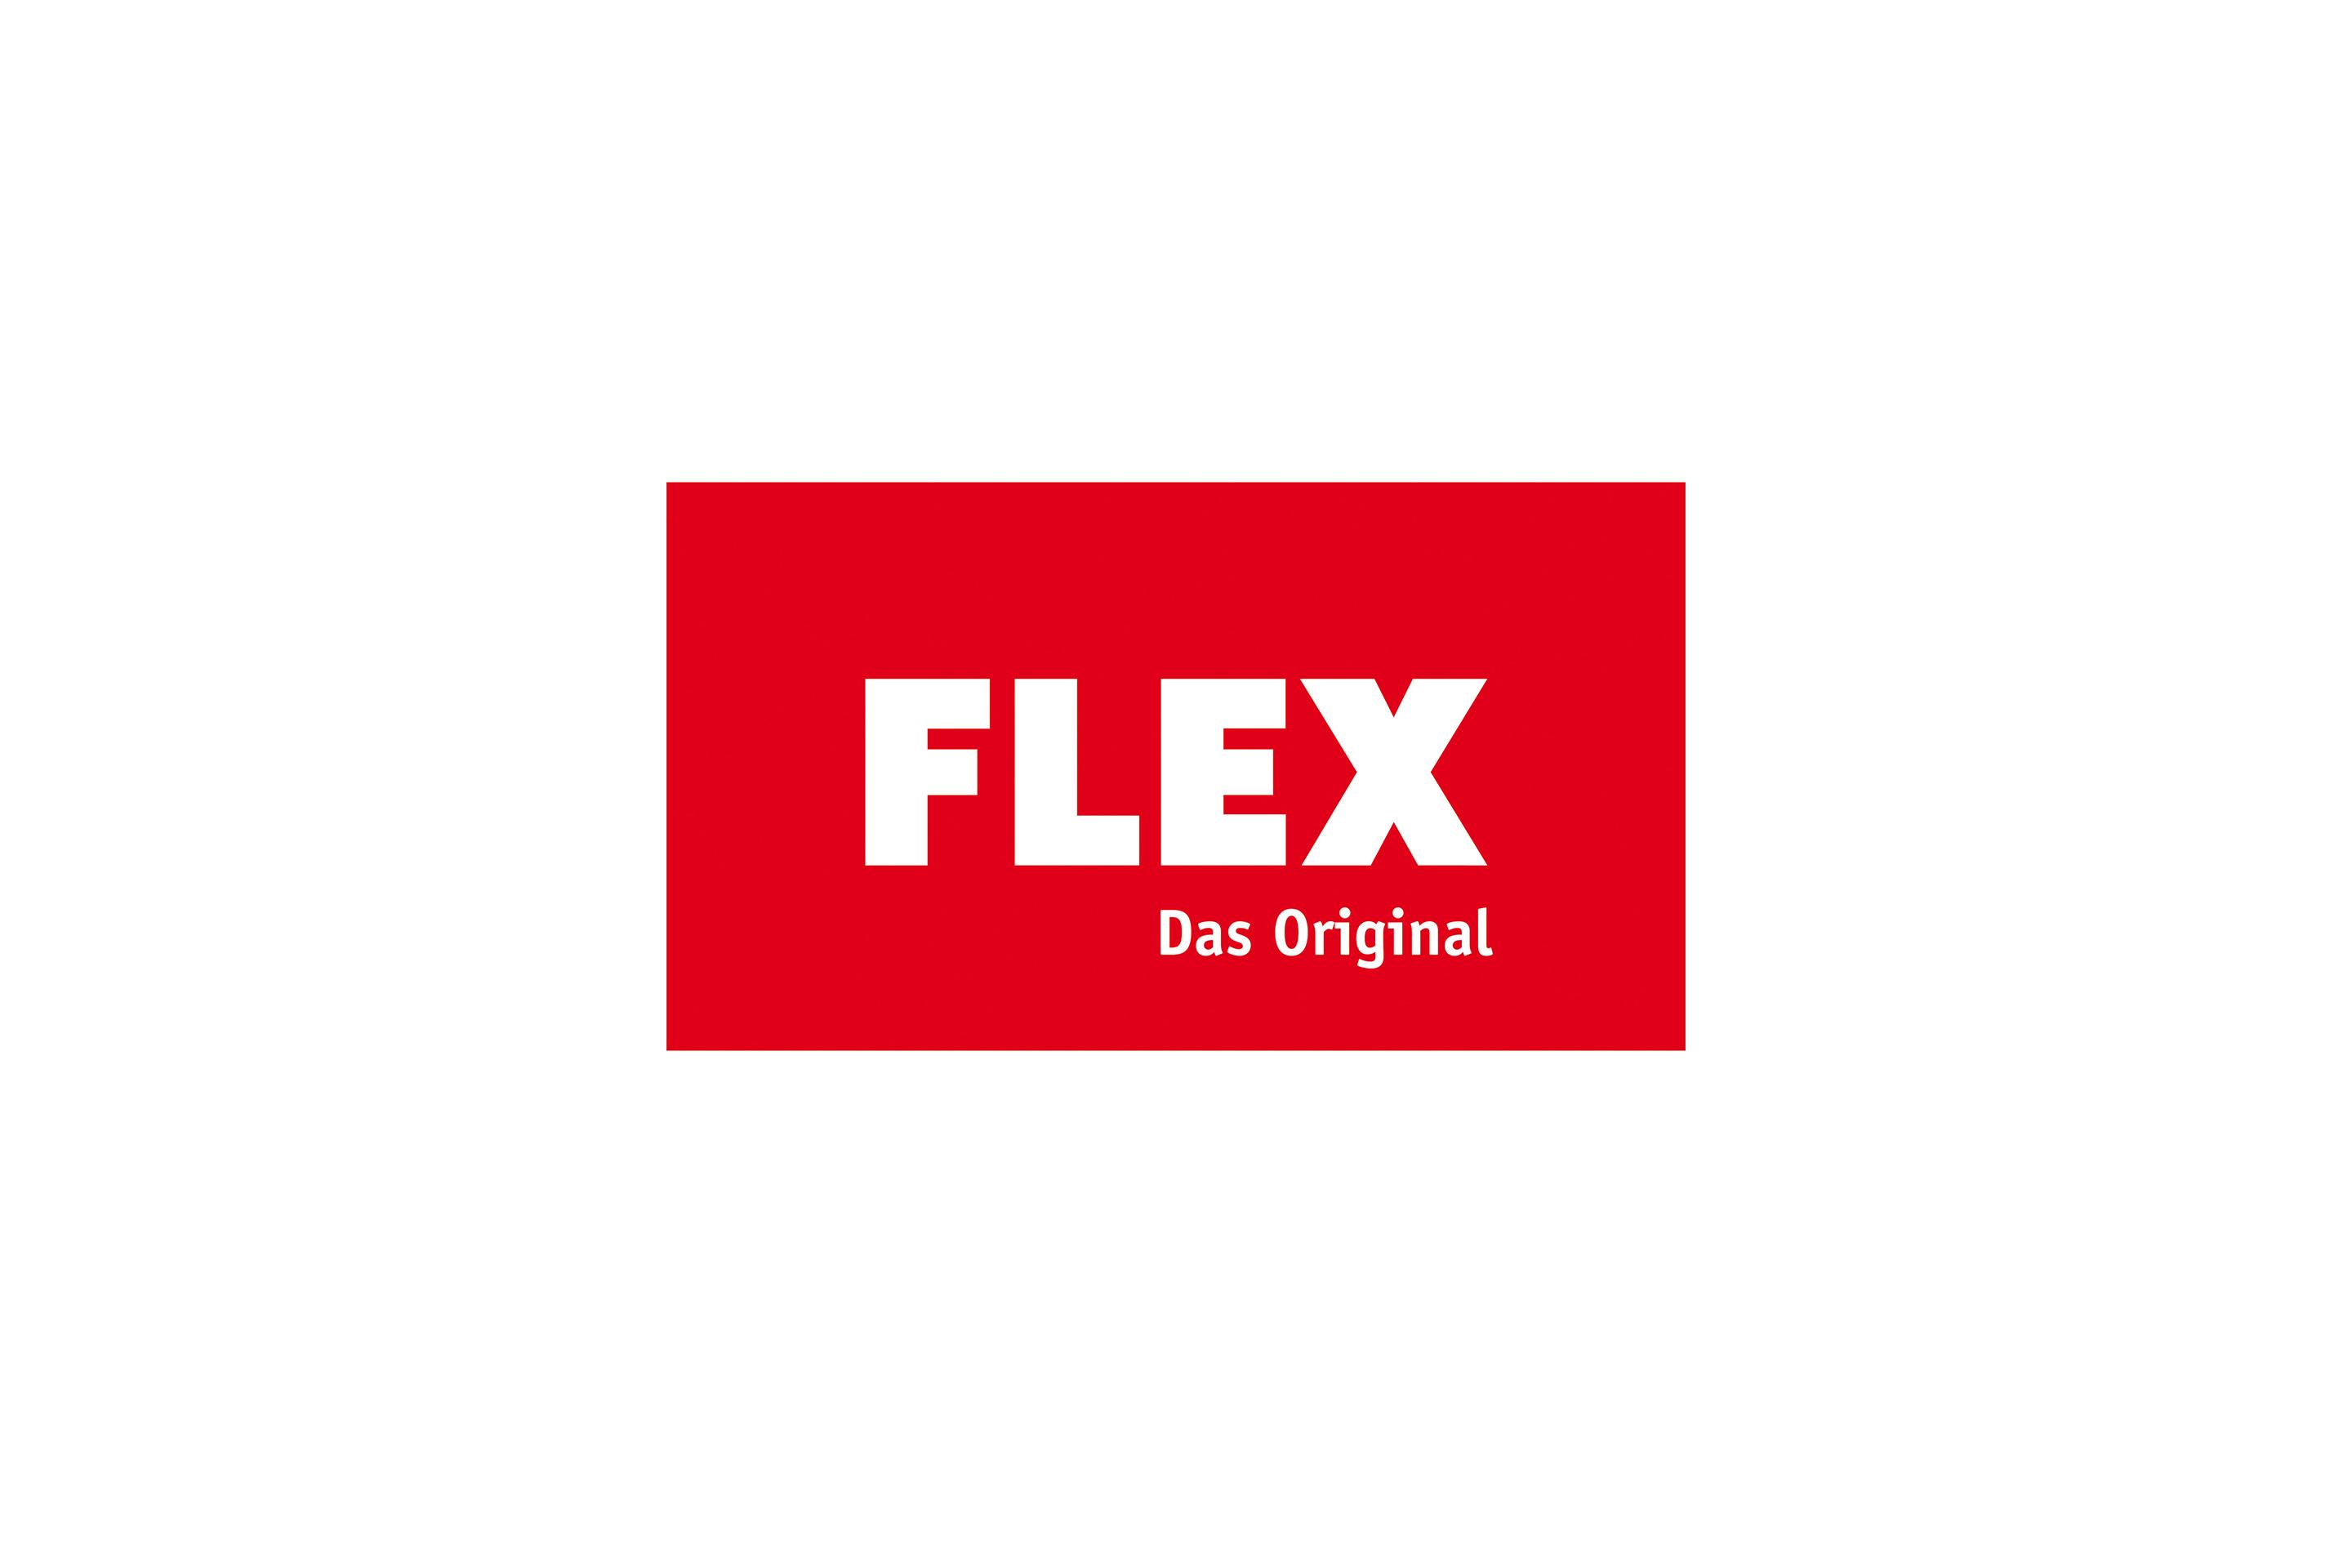 FLEX Das Original -logon historia